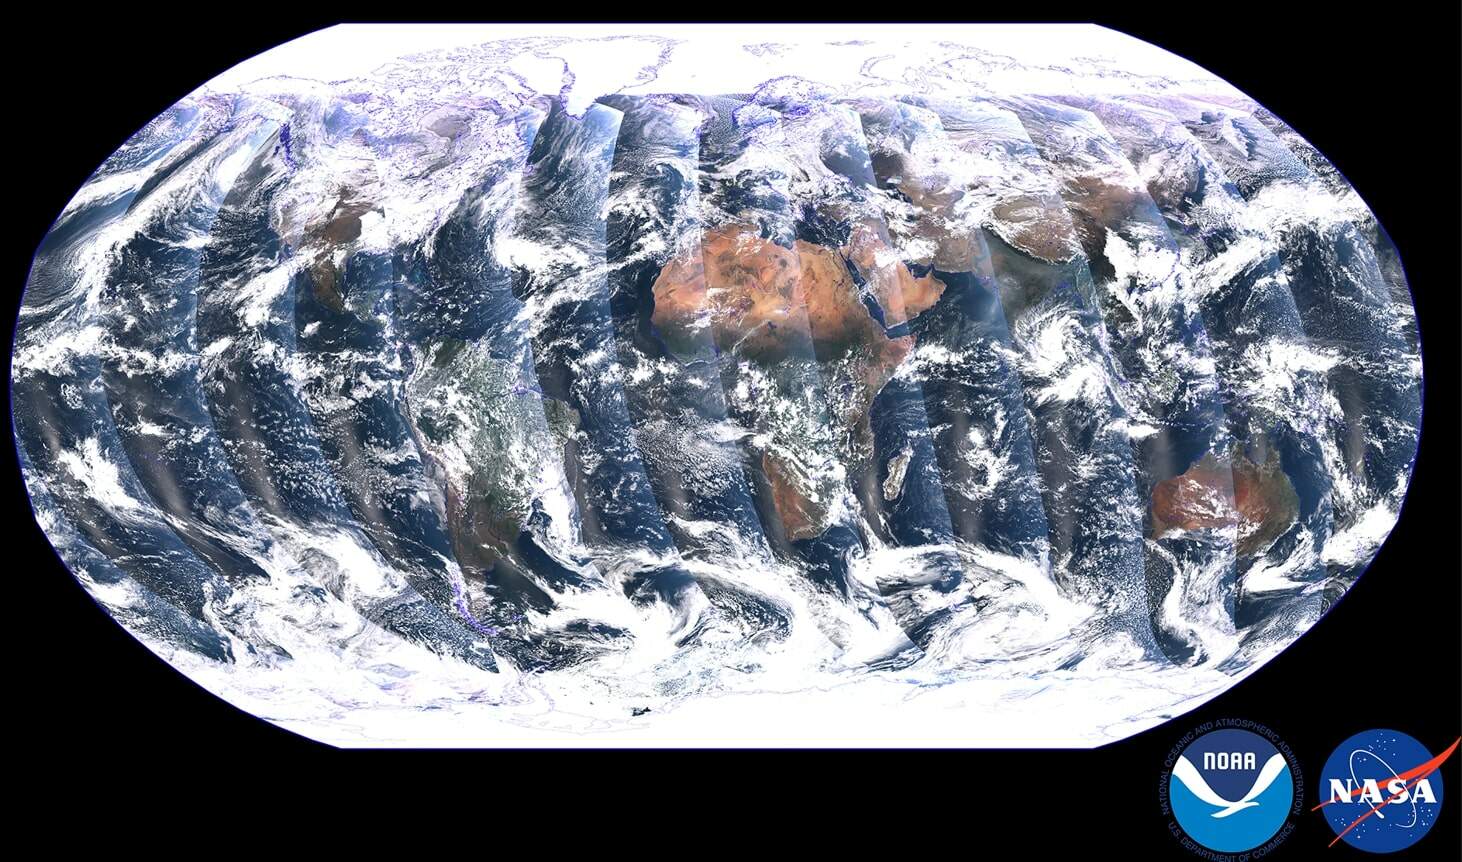 Pianeta Terra, la visione completa del globo con questa folle immagine